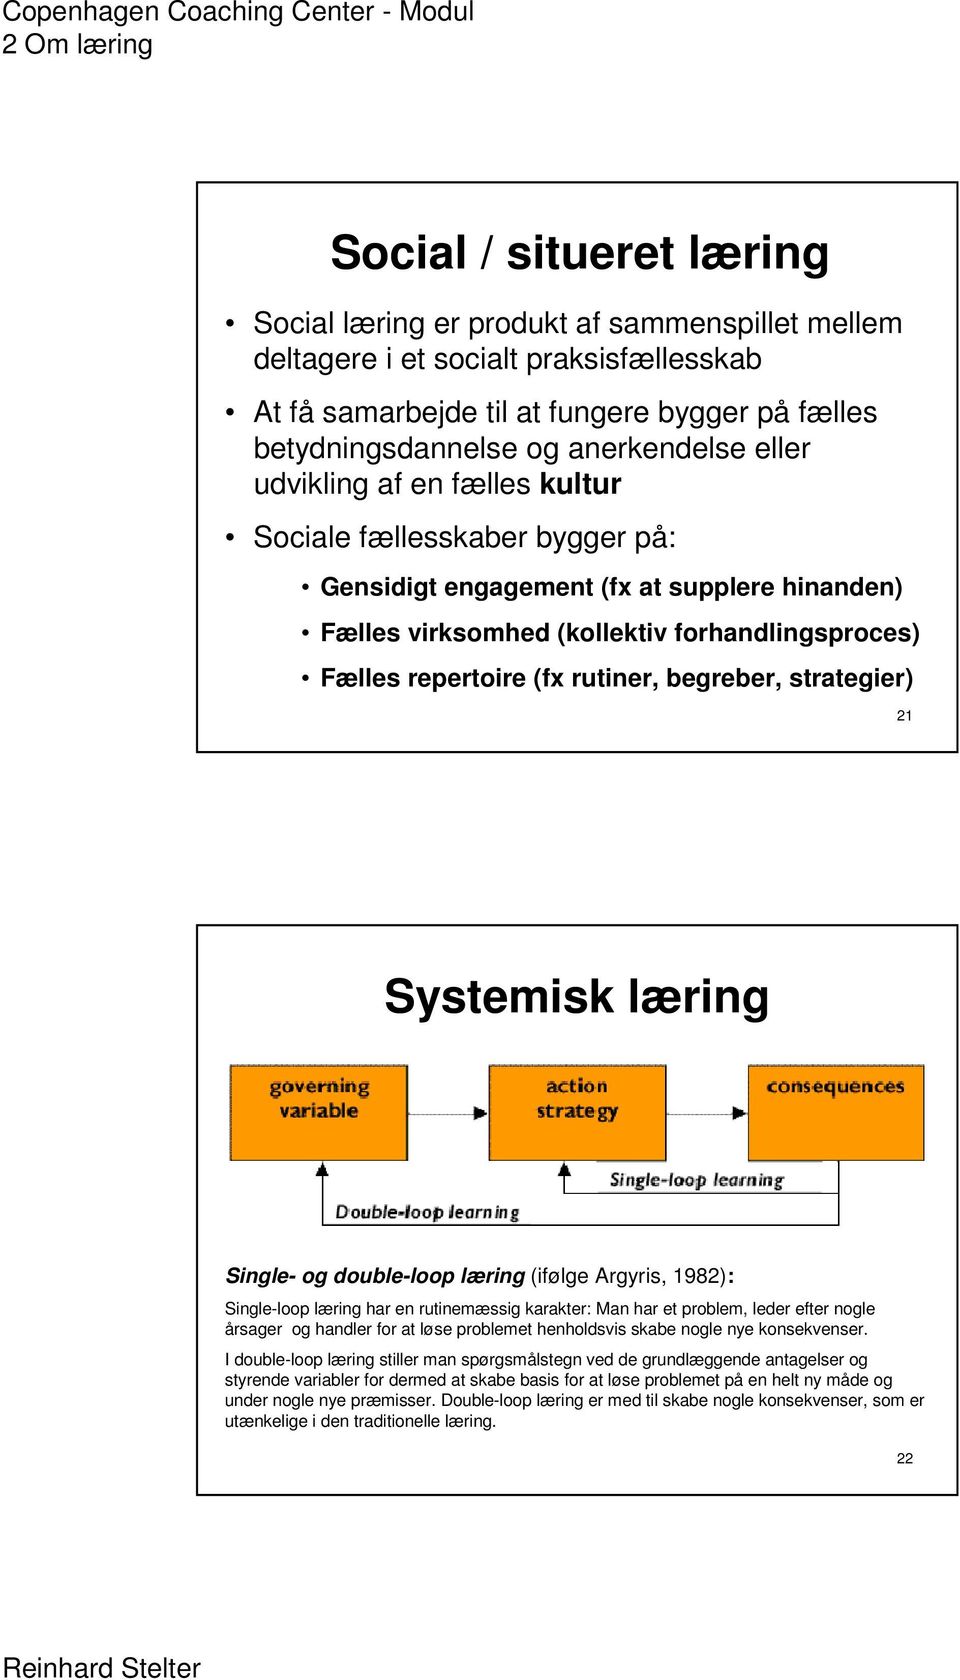 begreber, strategier) 21 Systemisk læring Single- og double-loop læring (ifølge Argyris, 1982): Single-loop læring har en rutinemæssig karakter: Man har et problem, leder efter nogle årsager og